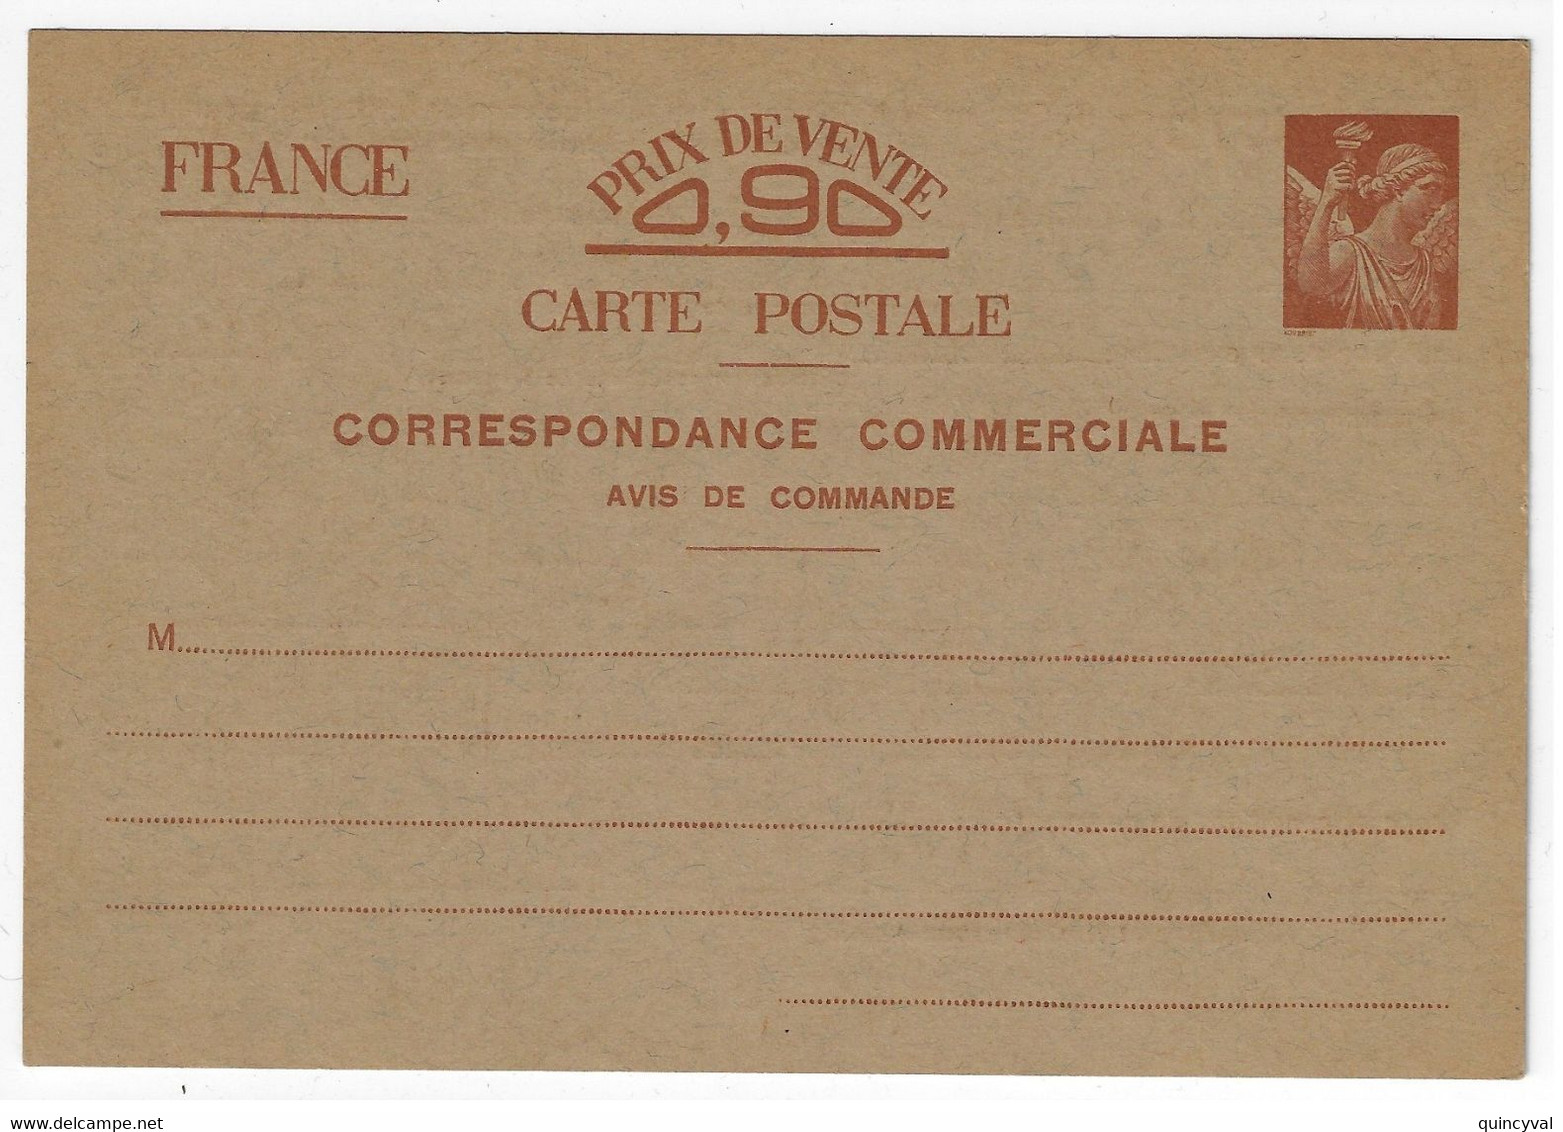 Carte Postale Commerciale INTERZONE 90c Avis De Commande Storch H3a Yv Sans Valeur Carton Chamois - Standard Postcards & Stamped On Demand (before 1995)